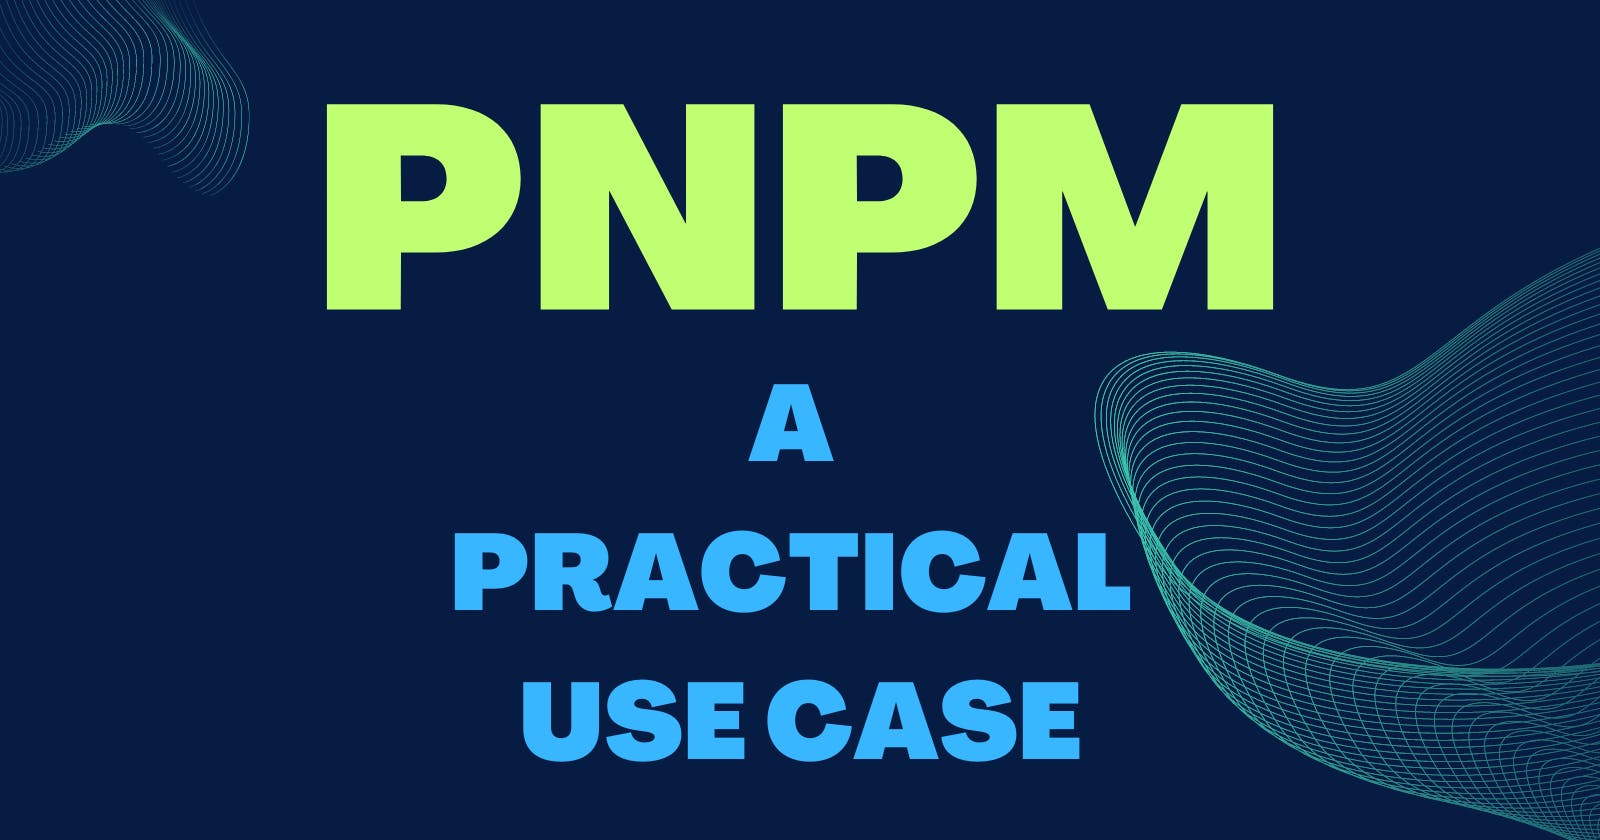 PNPM: A Practical Use Case